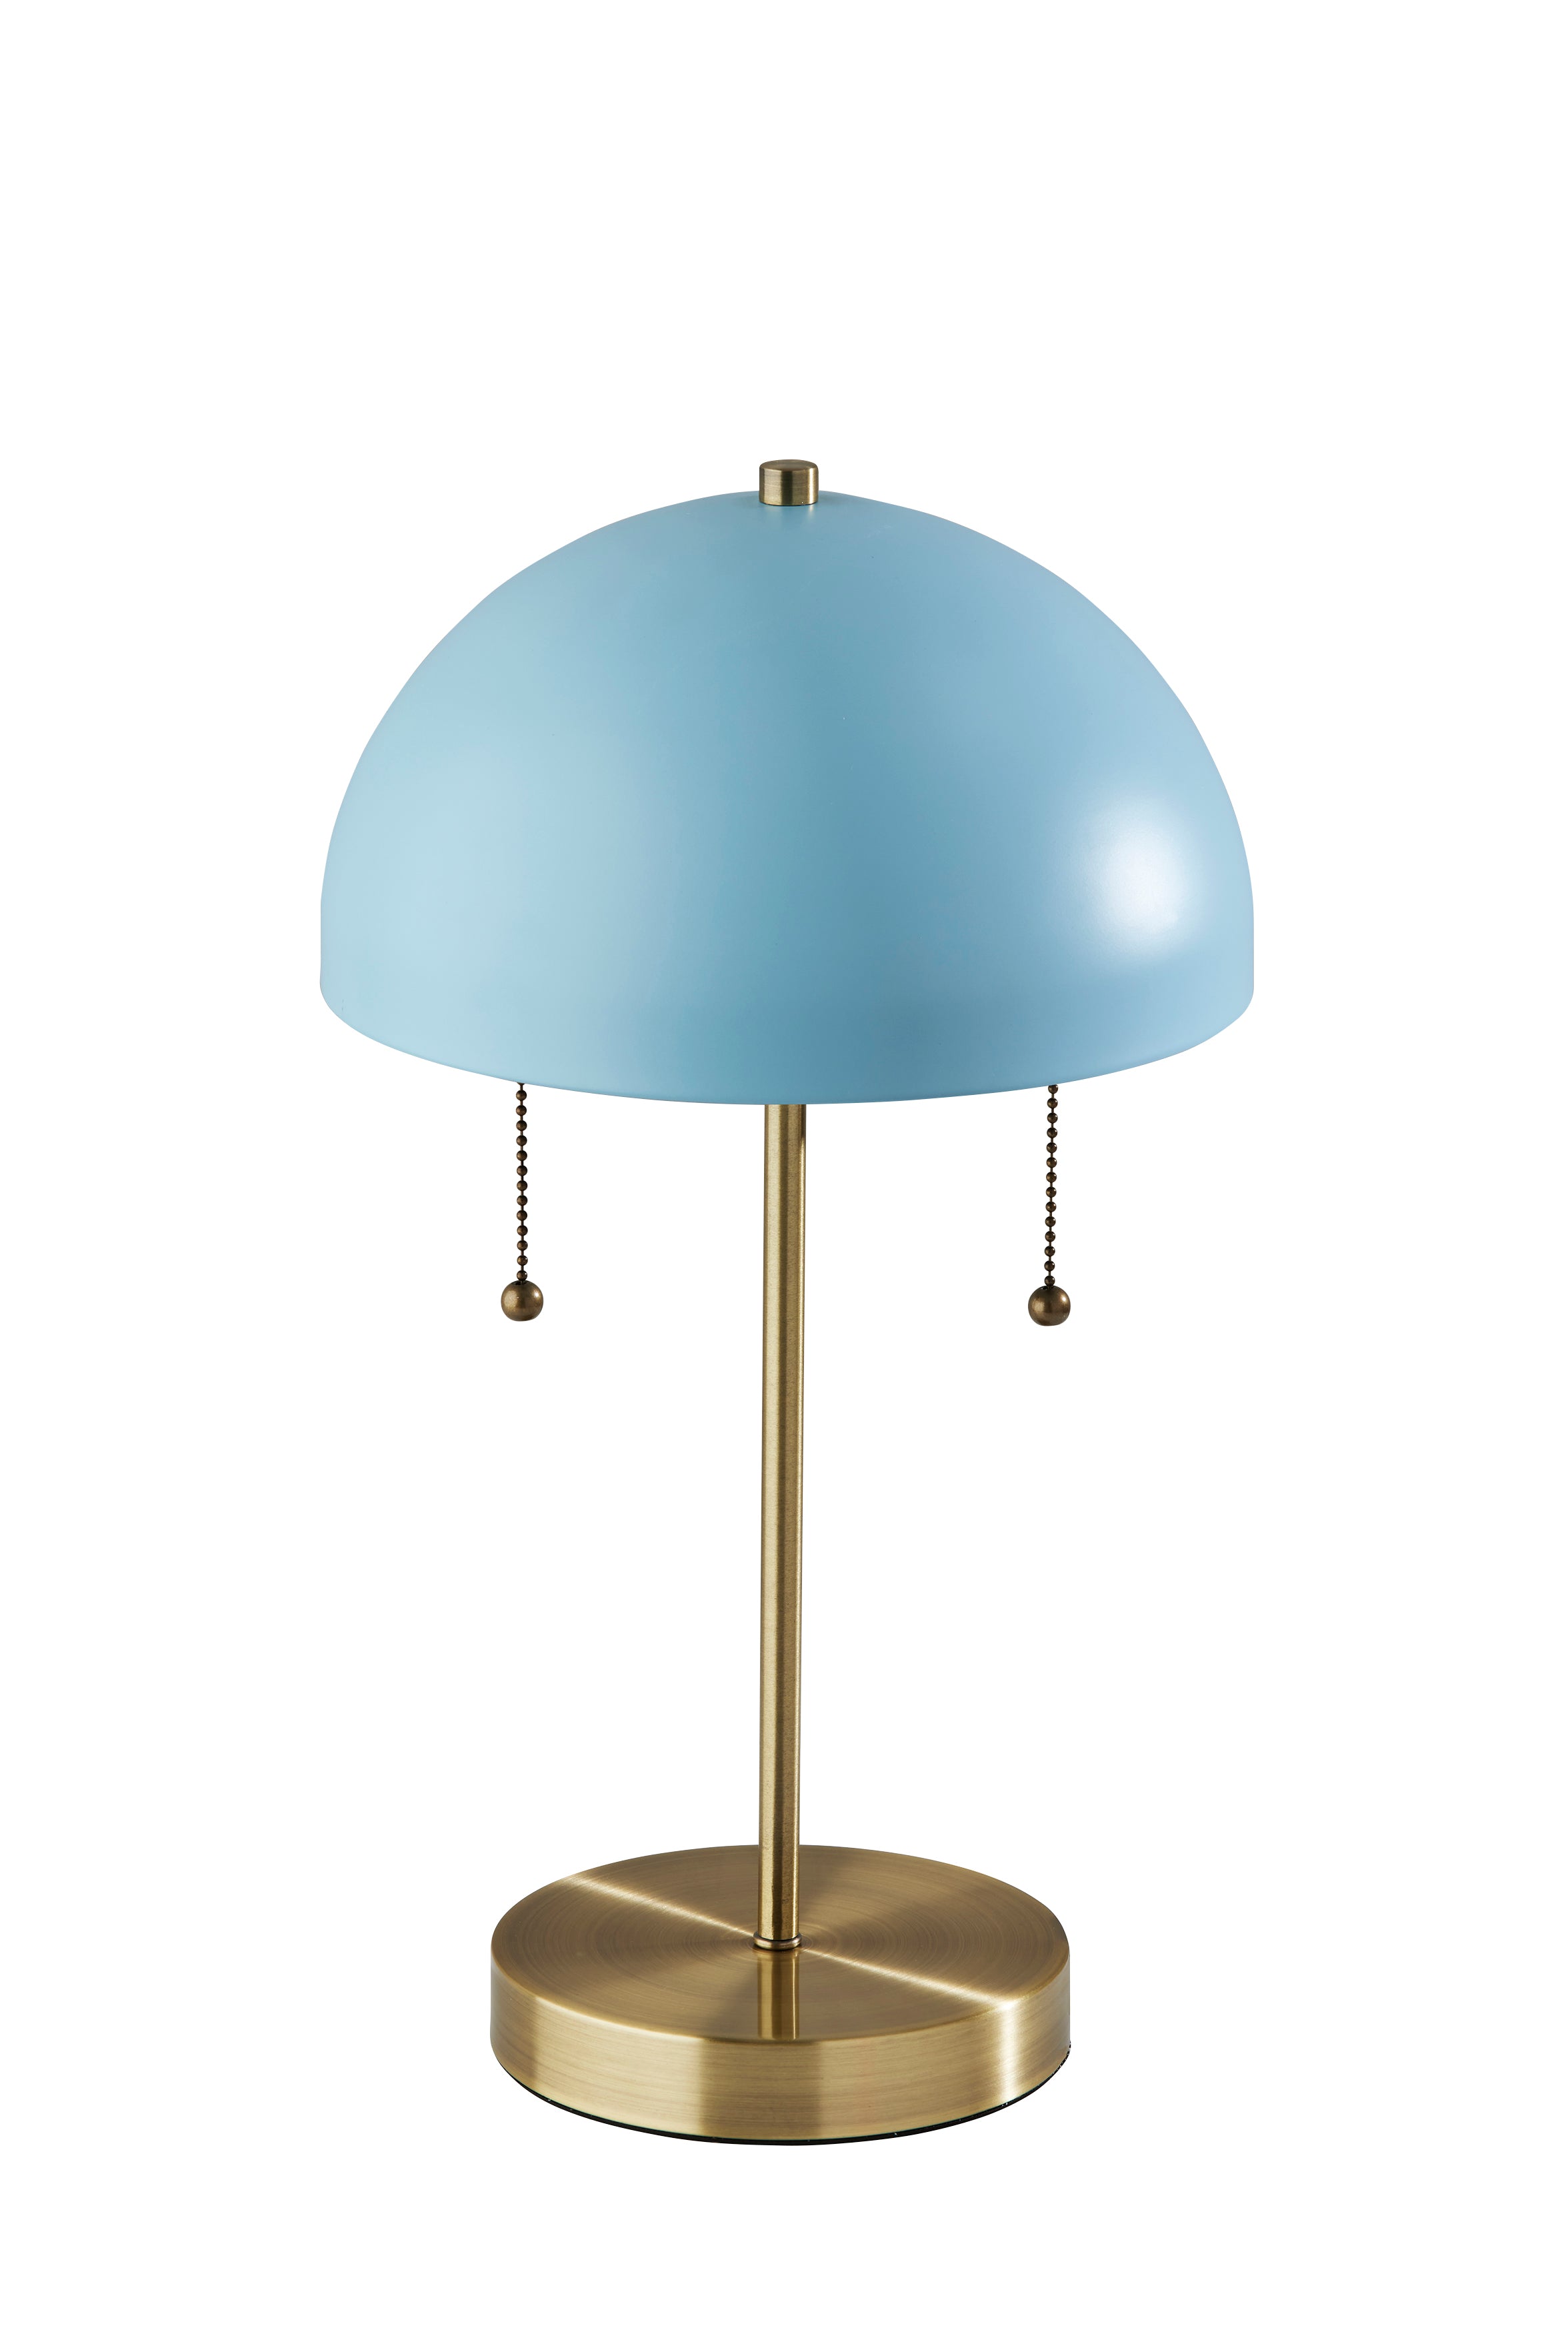 BOWIE Lampe sur table Or, Bleu - 5132-07 | ADESSO